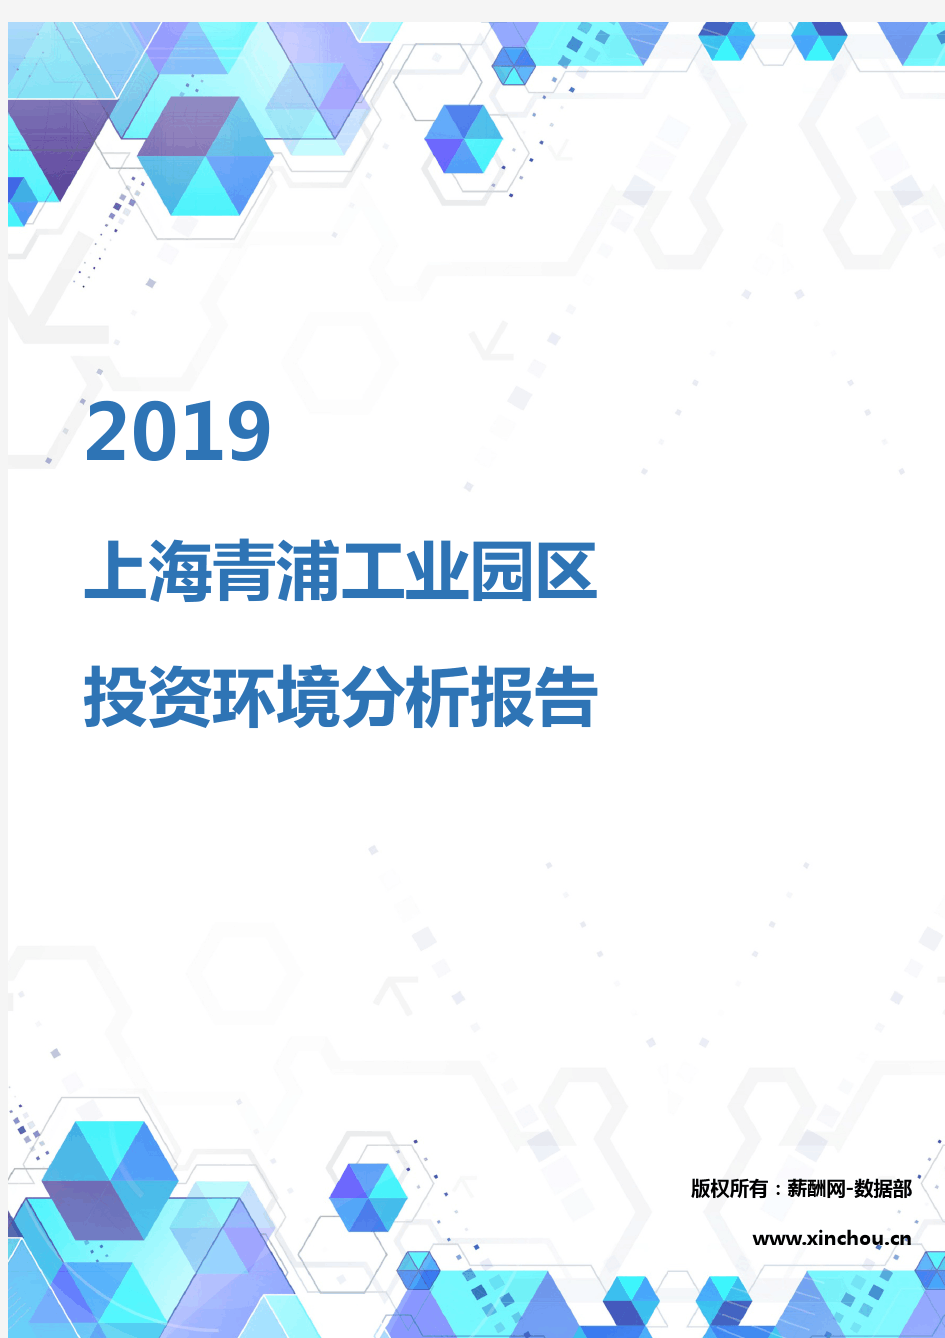 2019年上海青浦工业园区投资环境报告